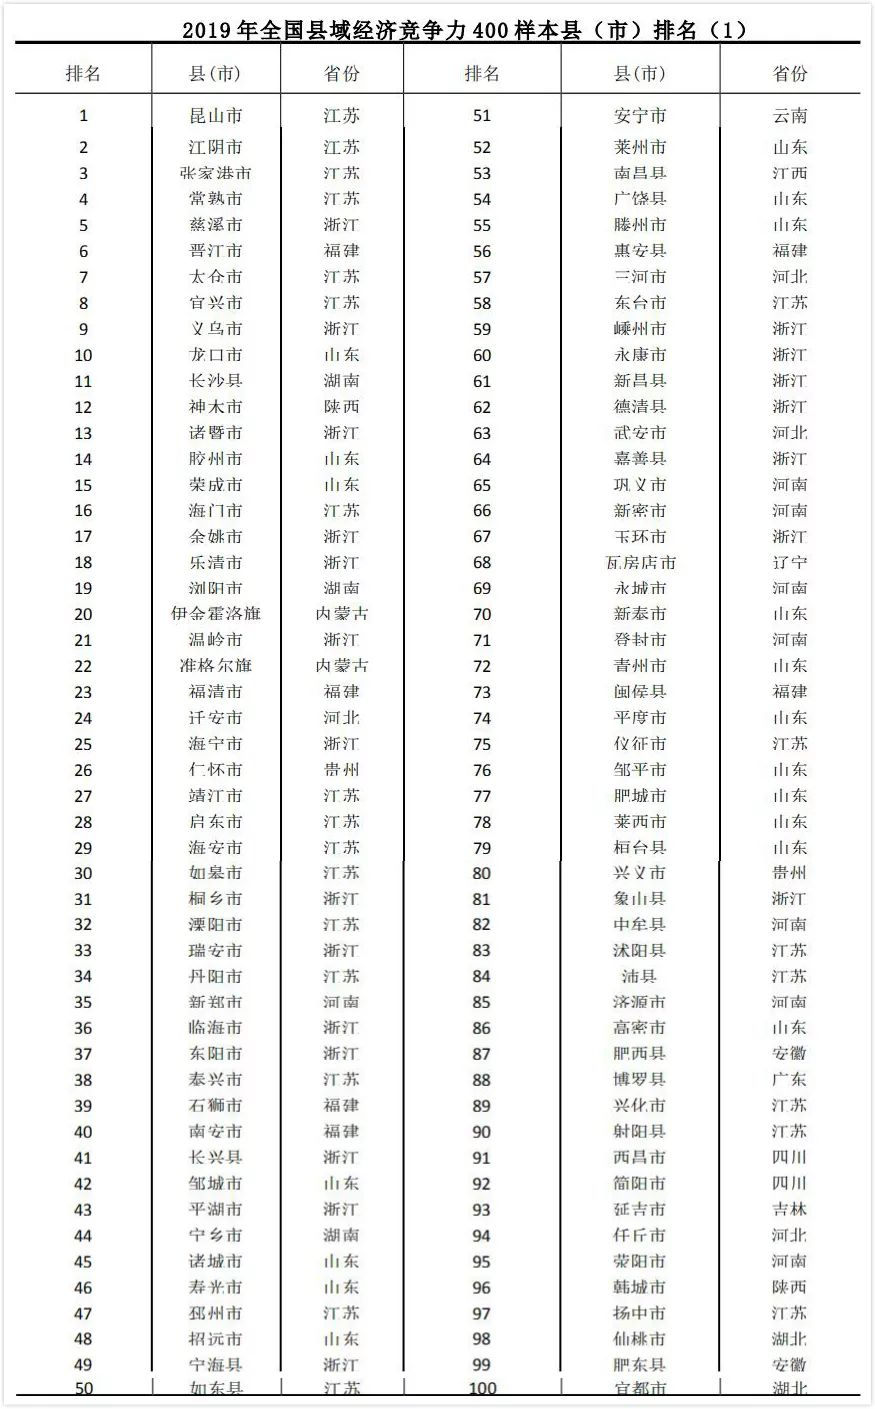 2019年中国 排行榜_最新 2019年中国大学排名1200强出炉